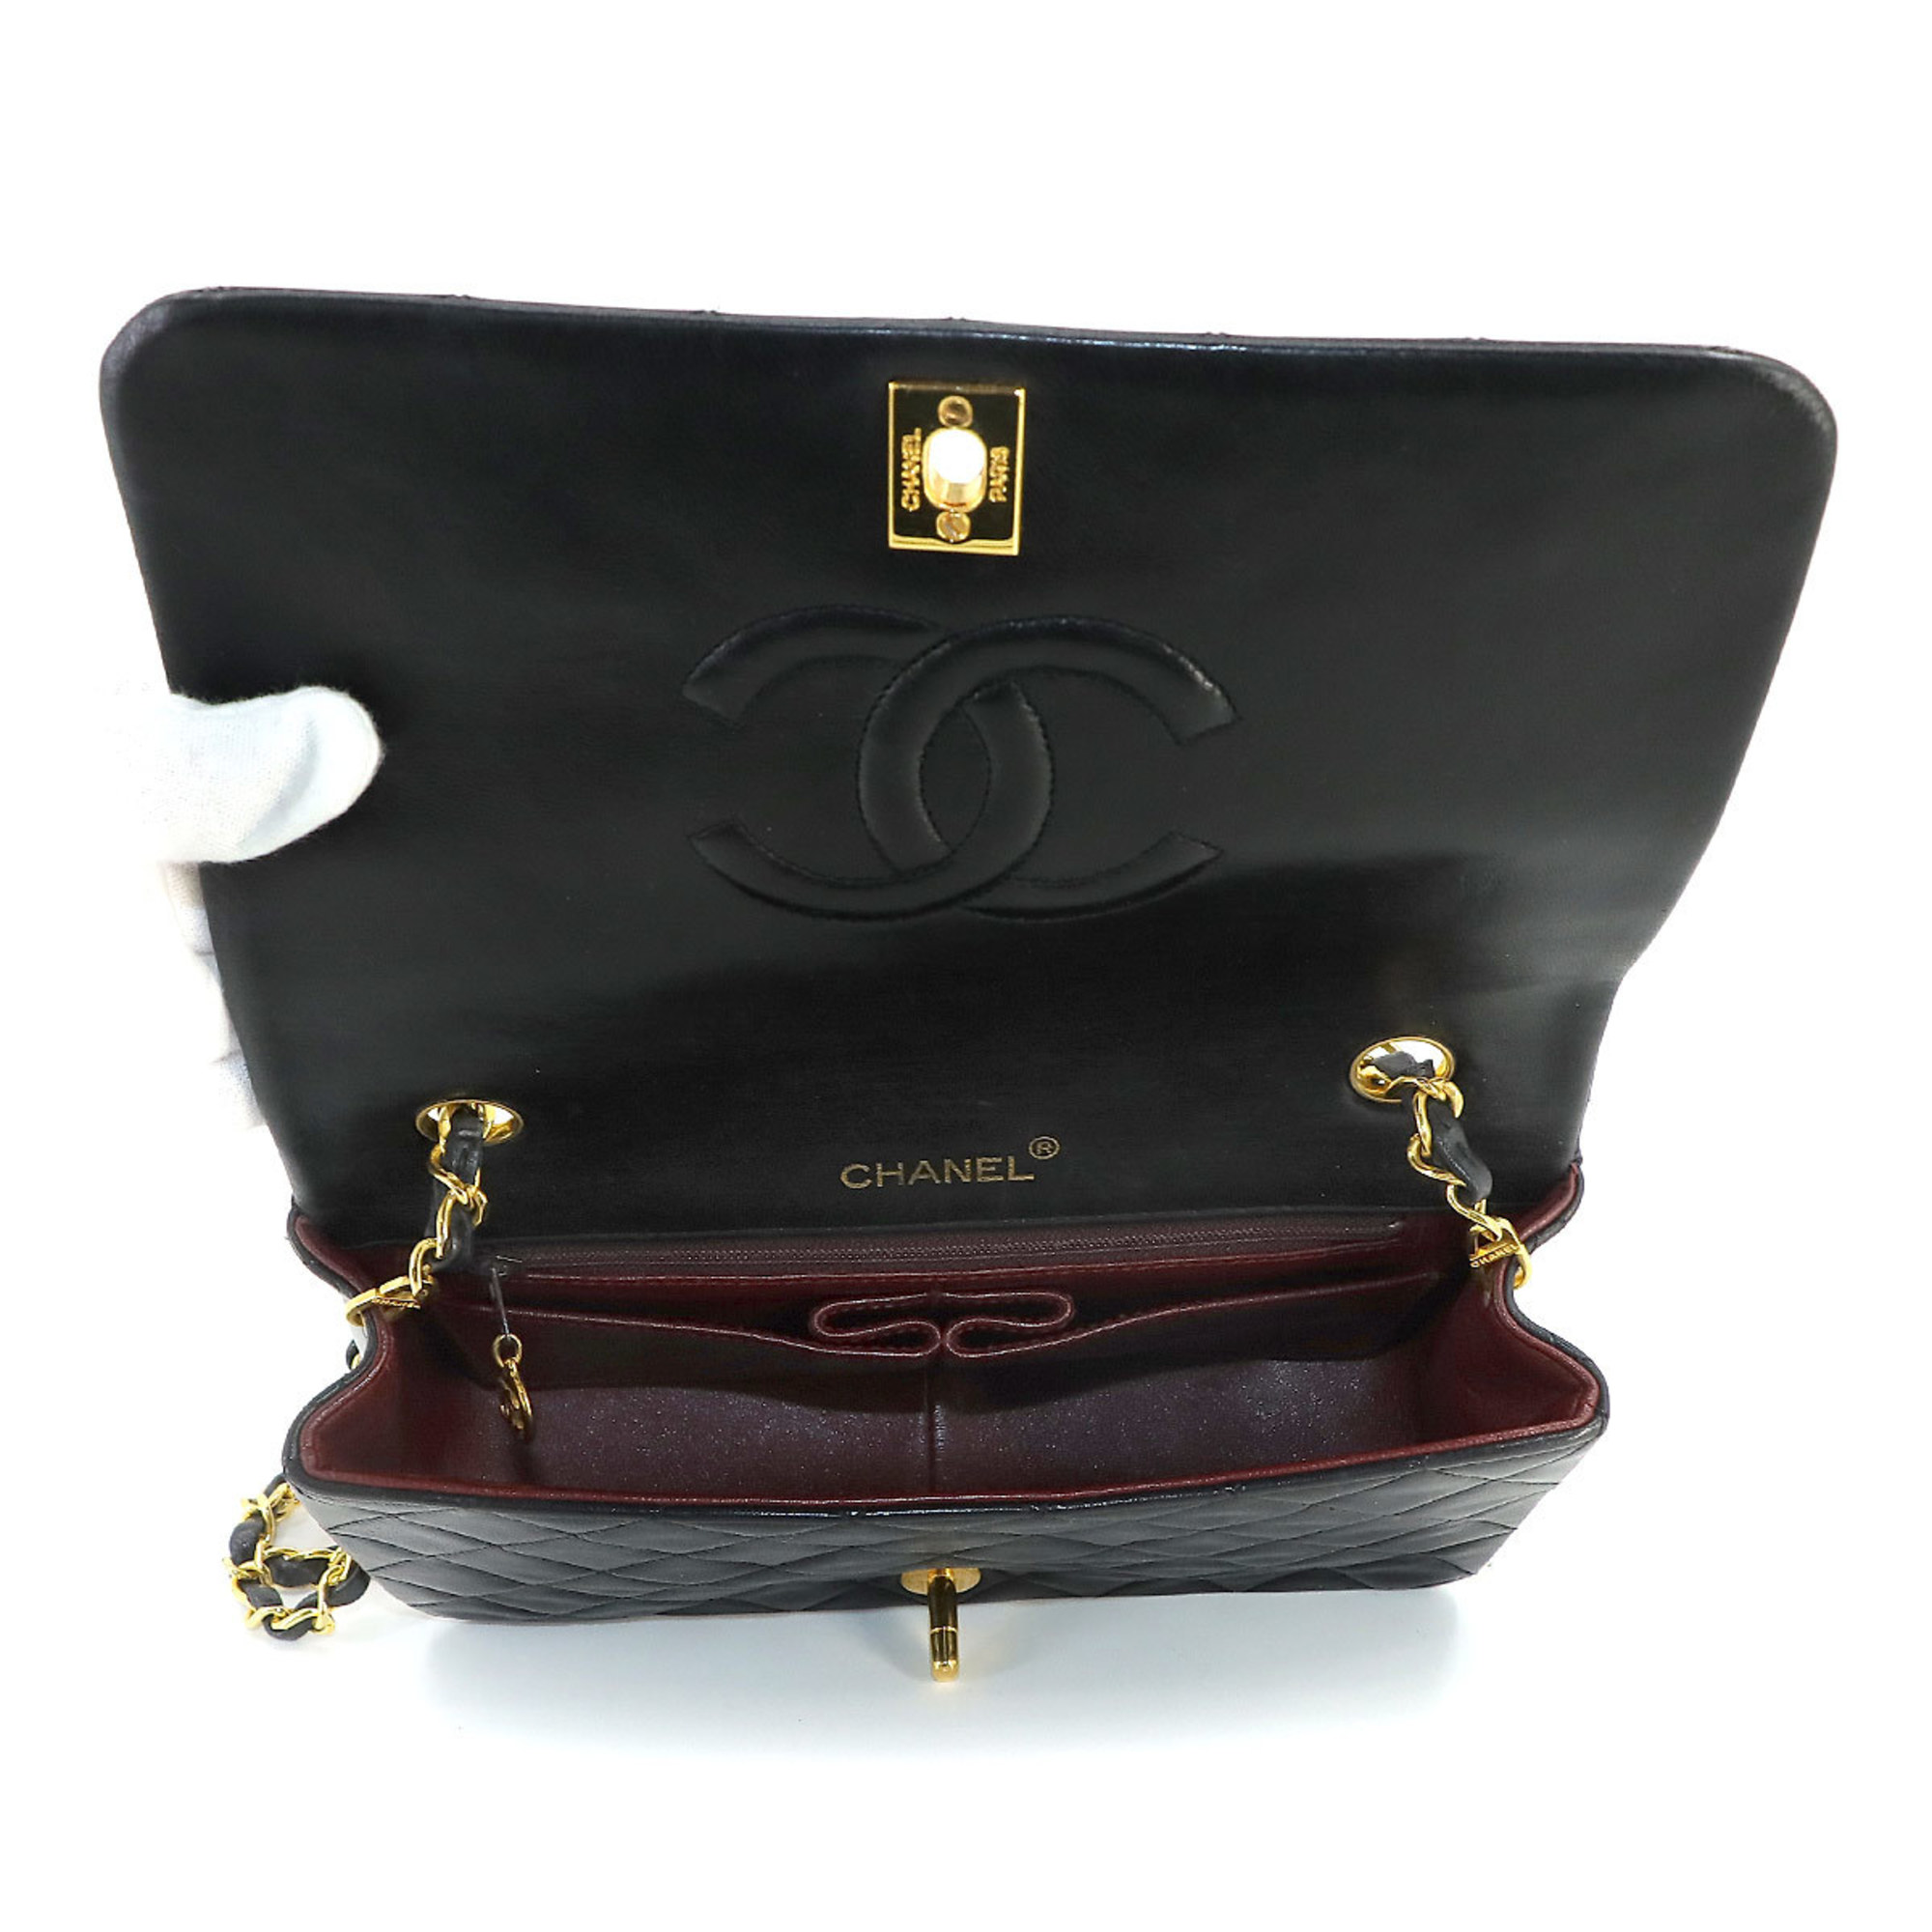 CHANEL Matelasse Chain Shoulder Bag Leather Black Gold Hardware